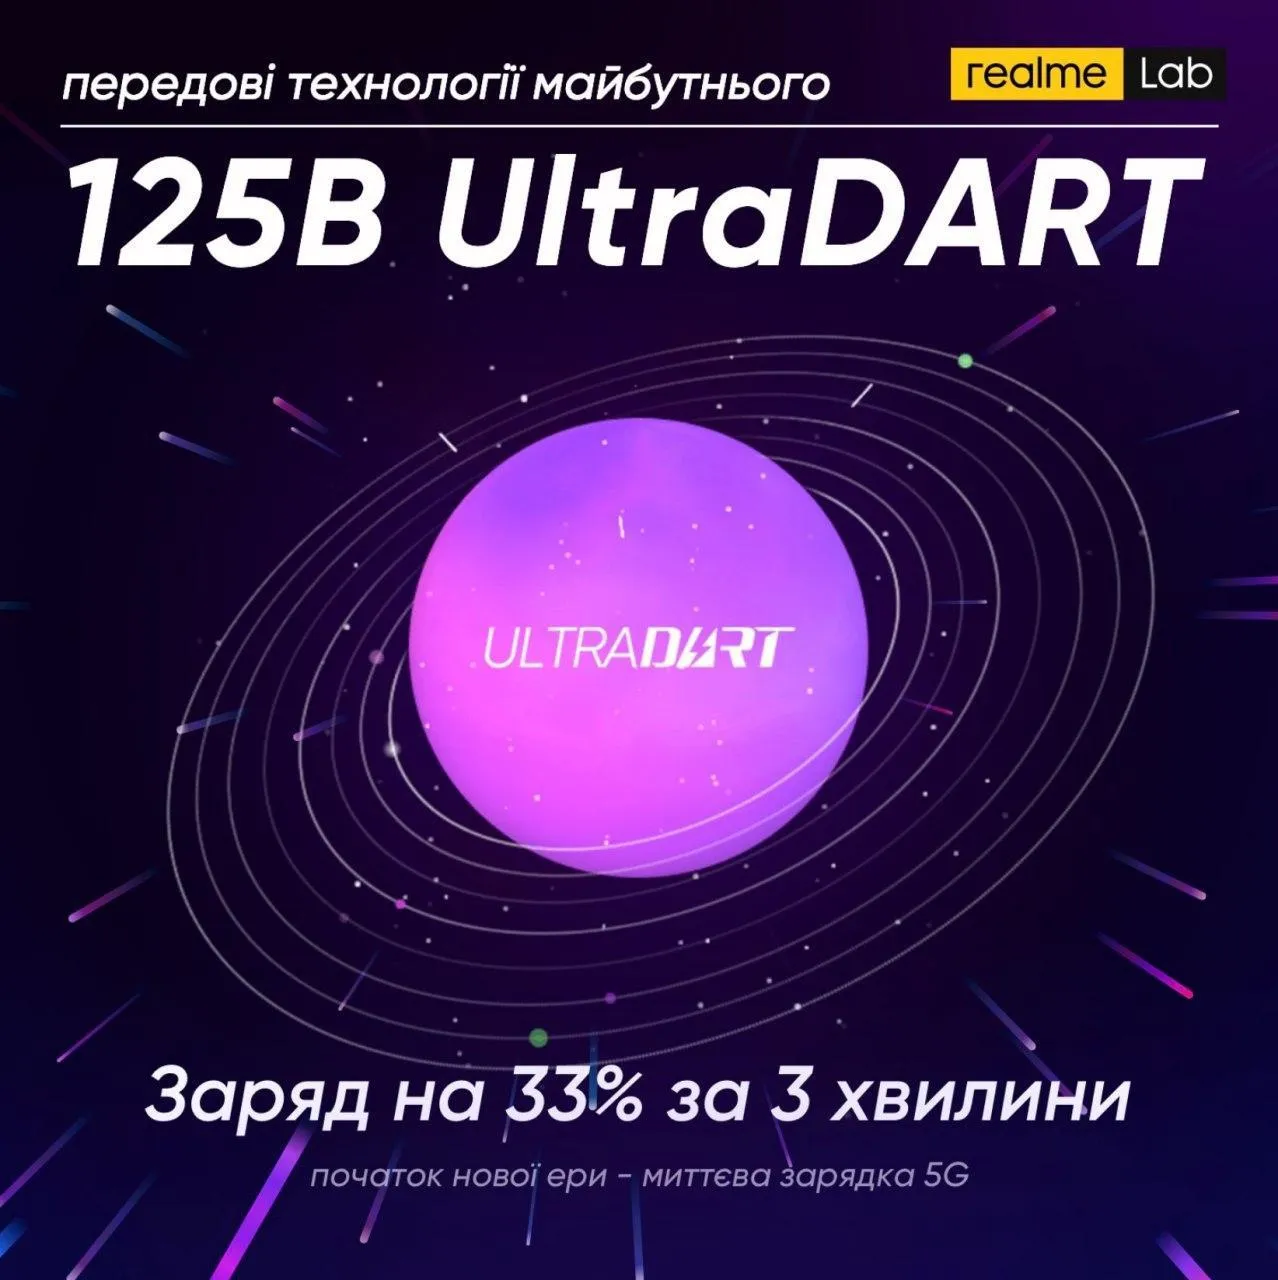 Революційна технологія UltraDART